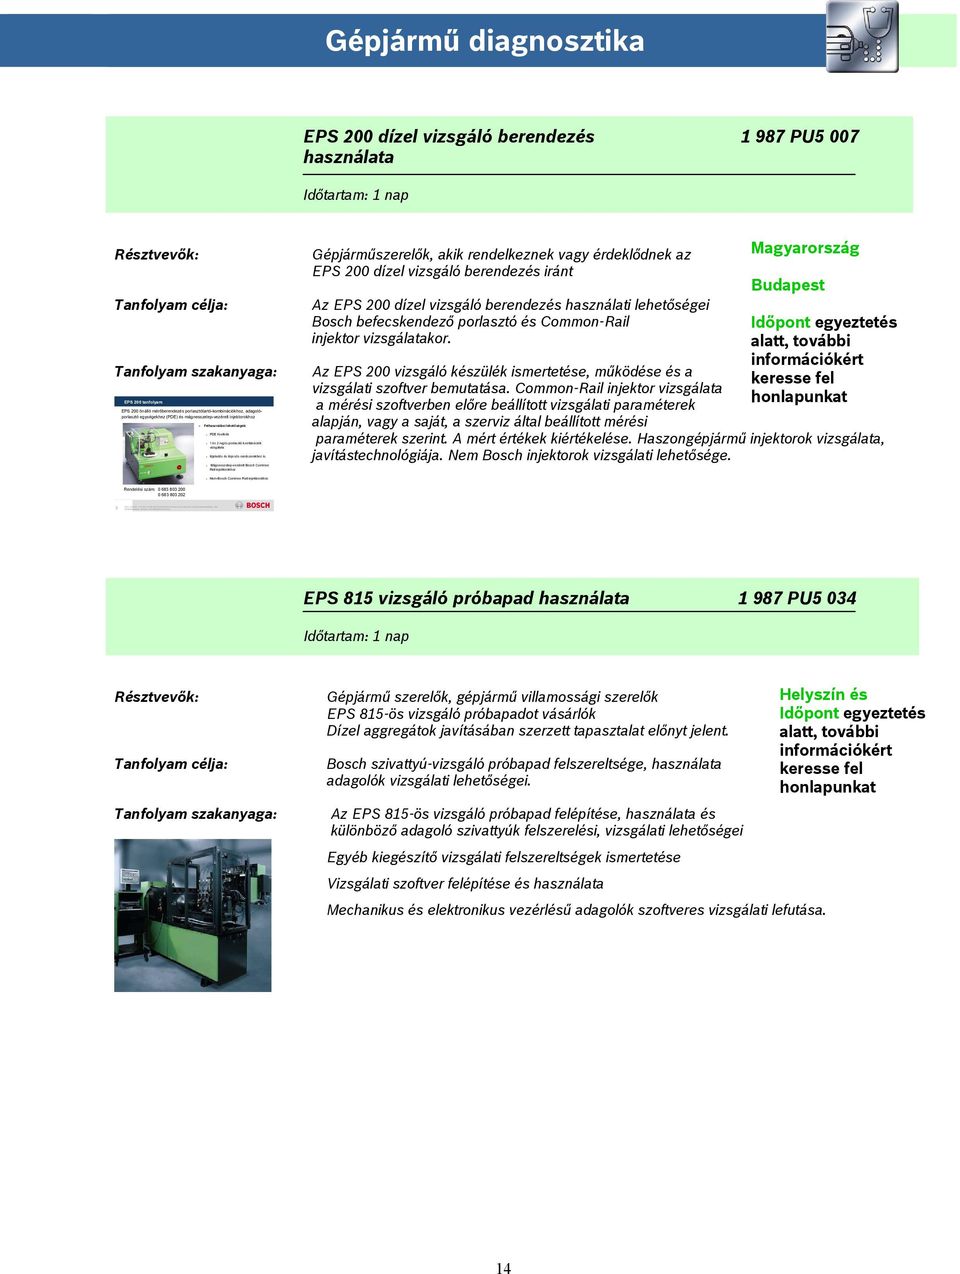 Új! Dízel Haszongépjármű. tanfolyamok. Tanfolyamok 2012/1. Életre tervezve  - PDF Ingyenes letöltés